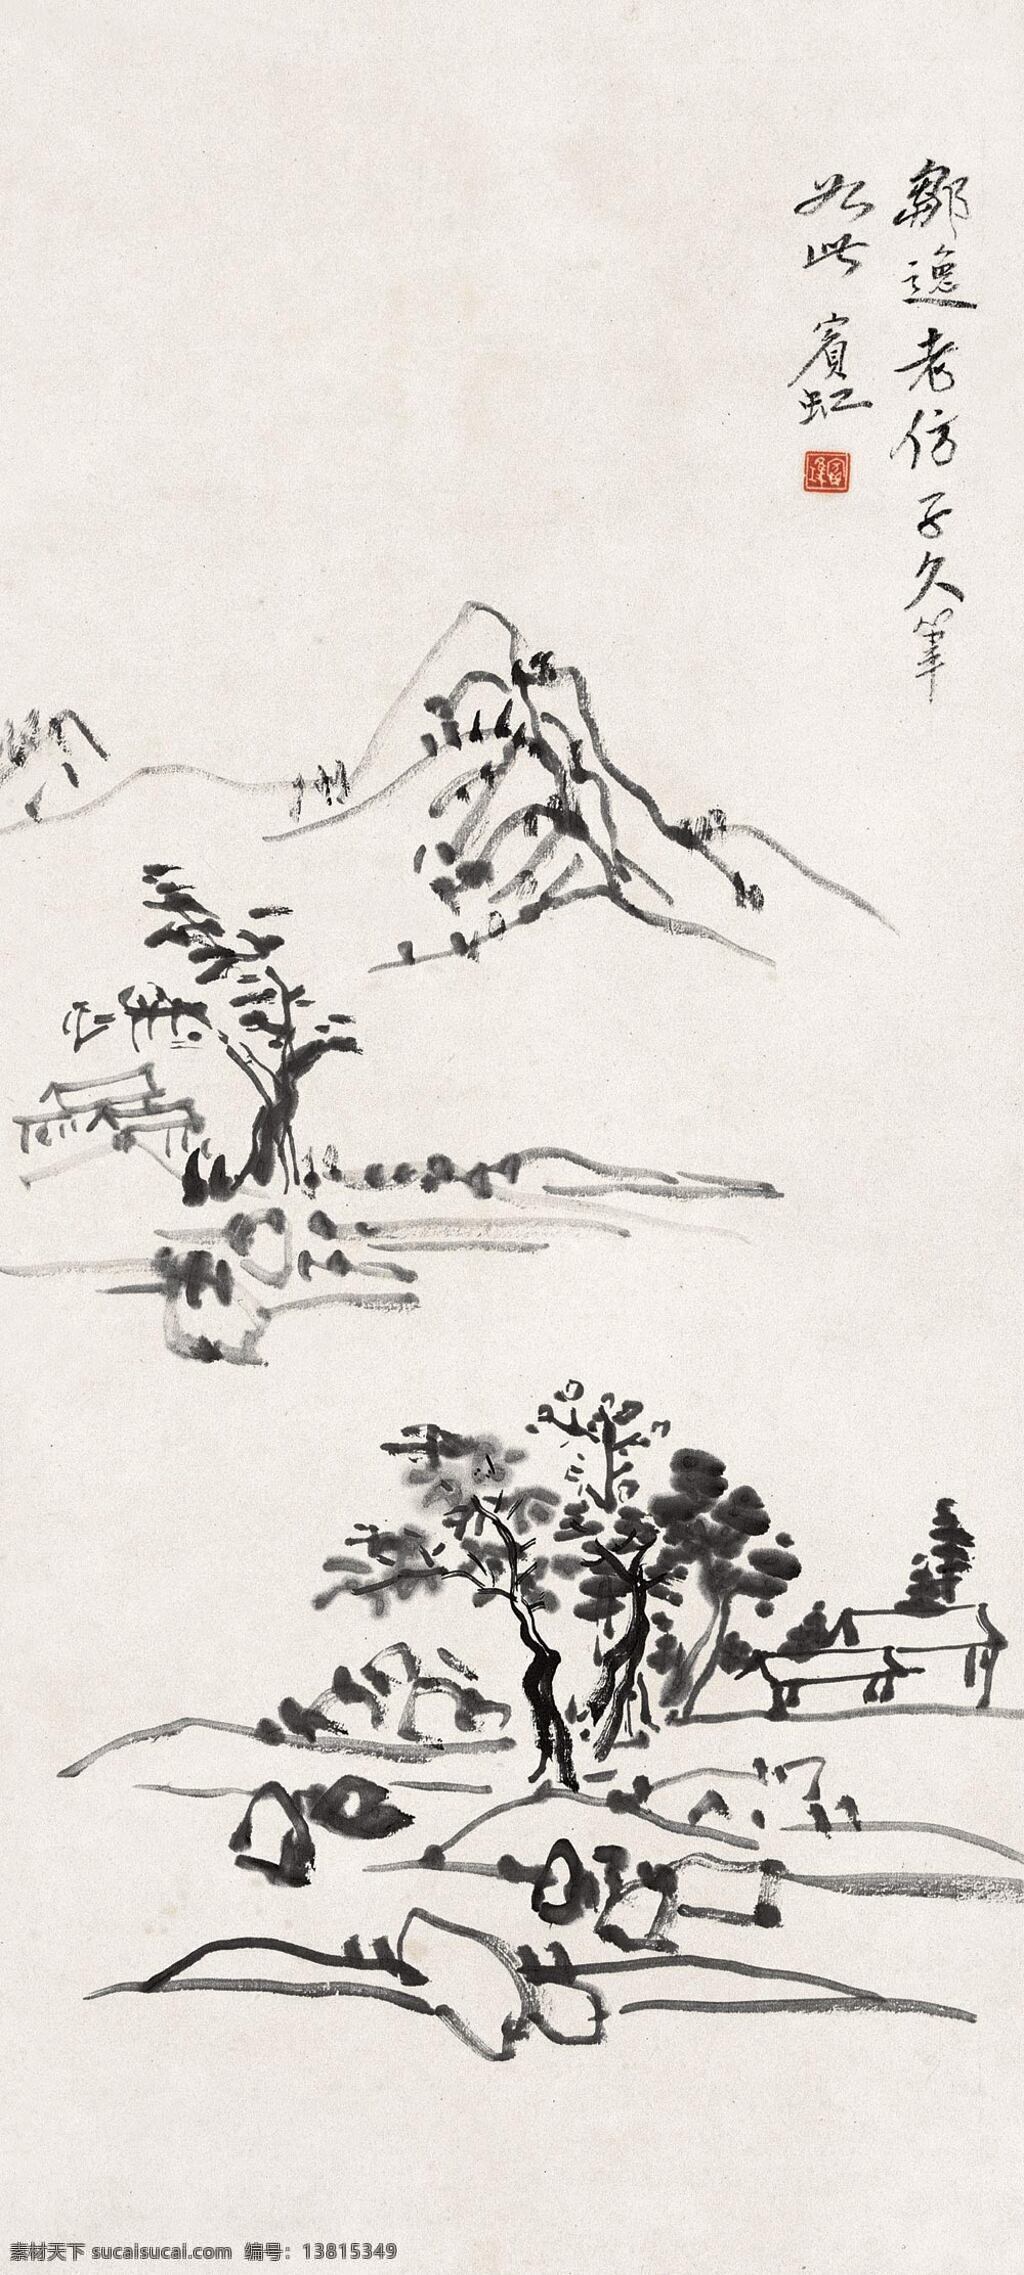 黄宾虹 写意山水 积墨法 传统 山水画 近代绘画 黄宾虹作品 文化艺术 绘画书法